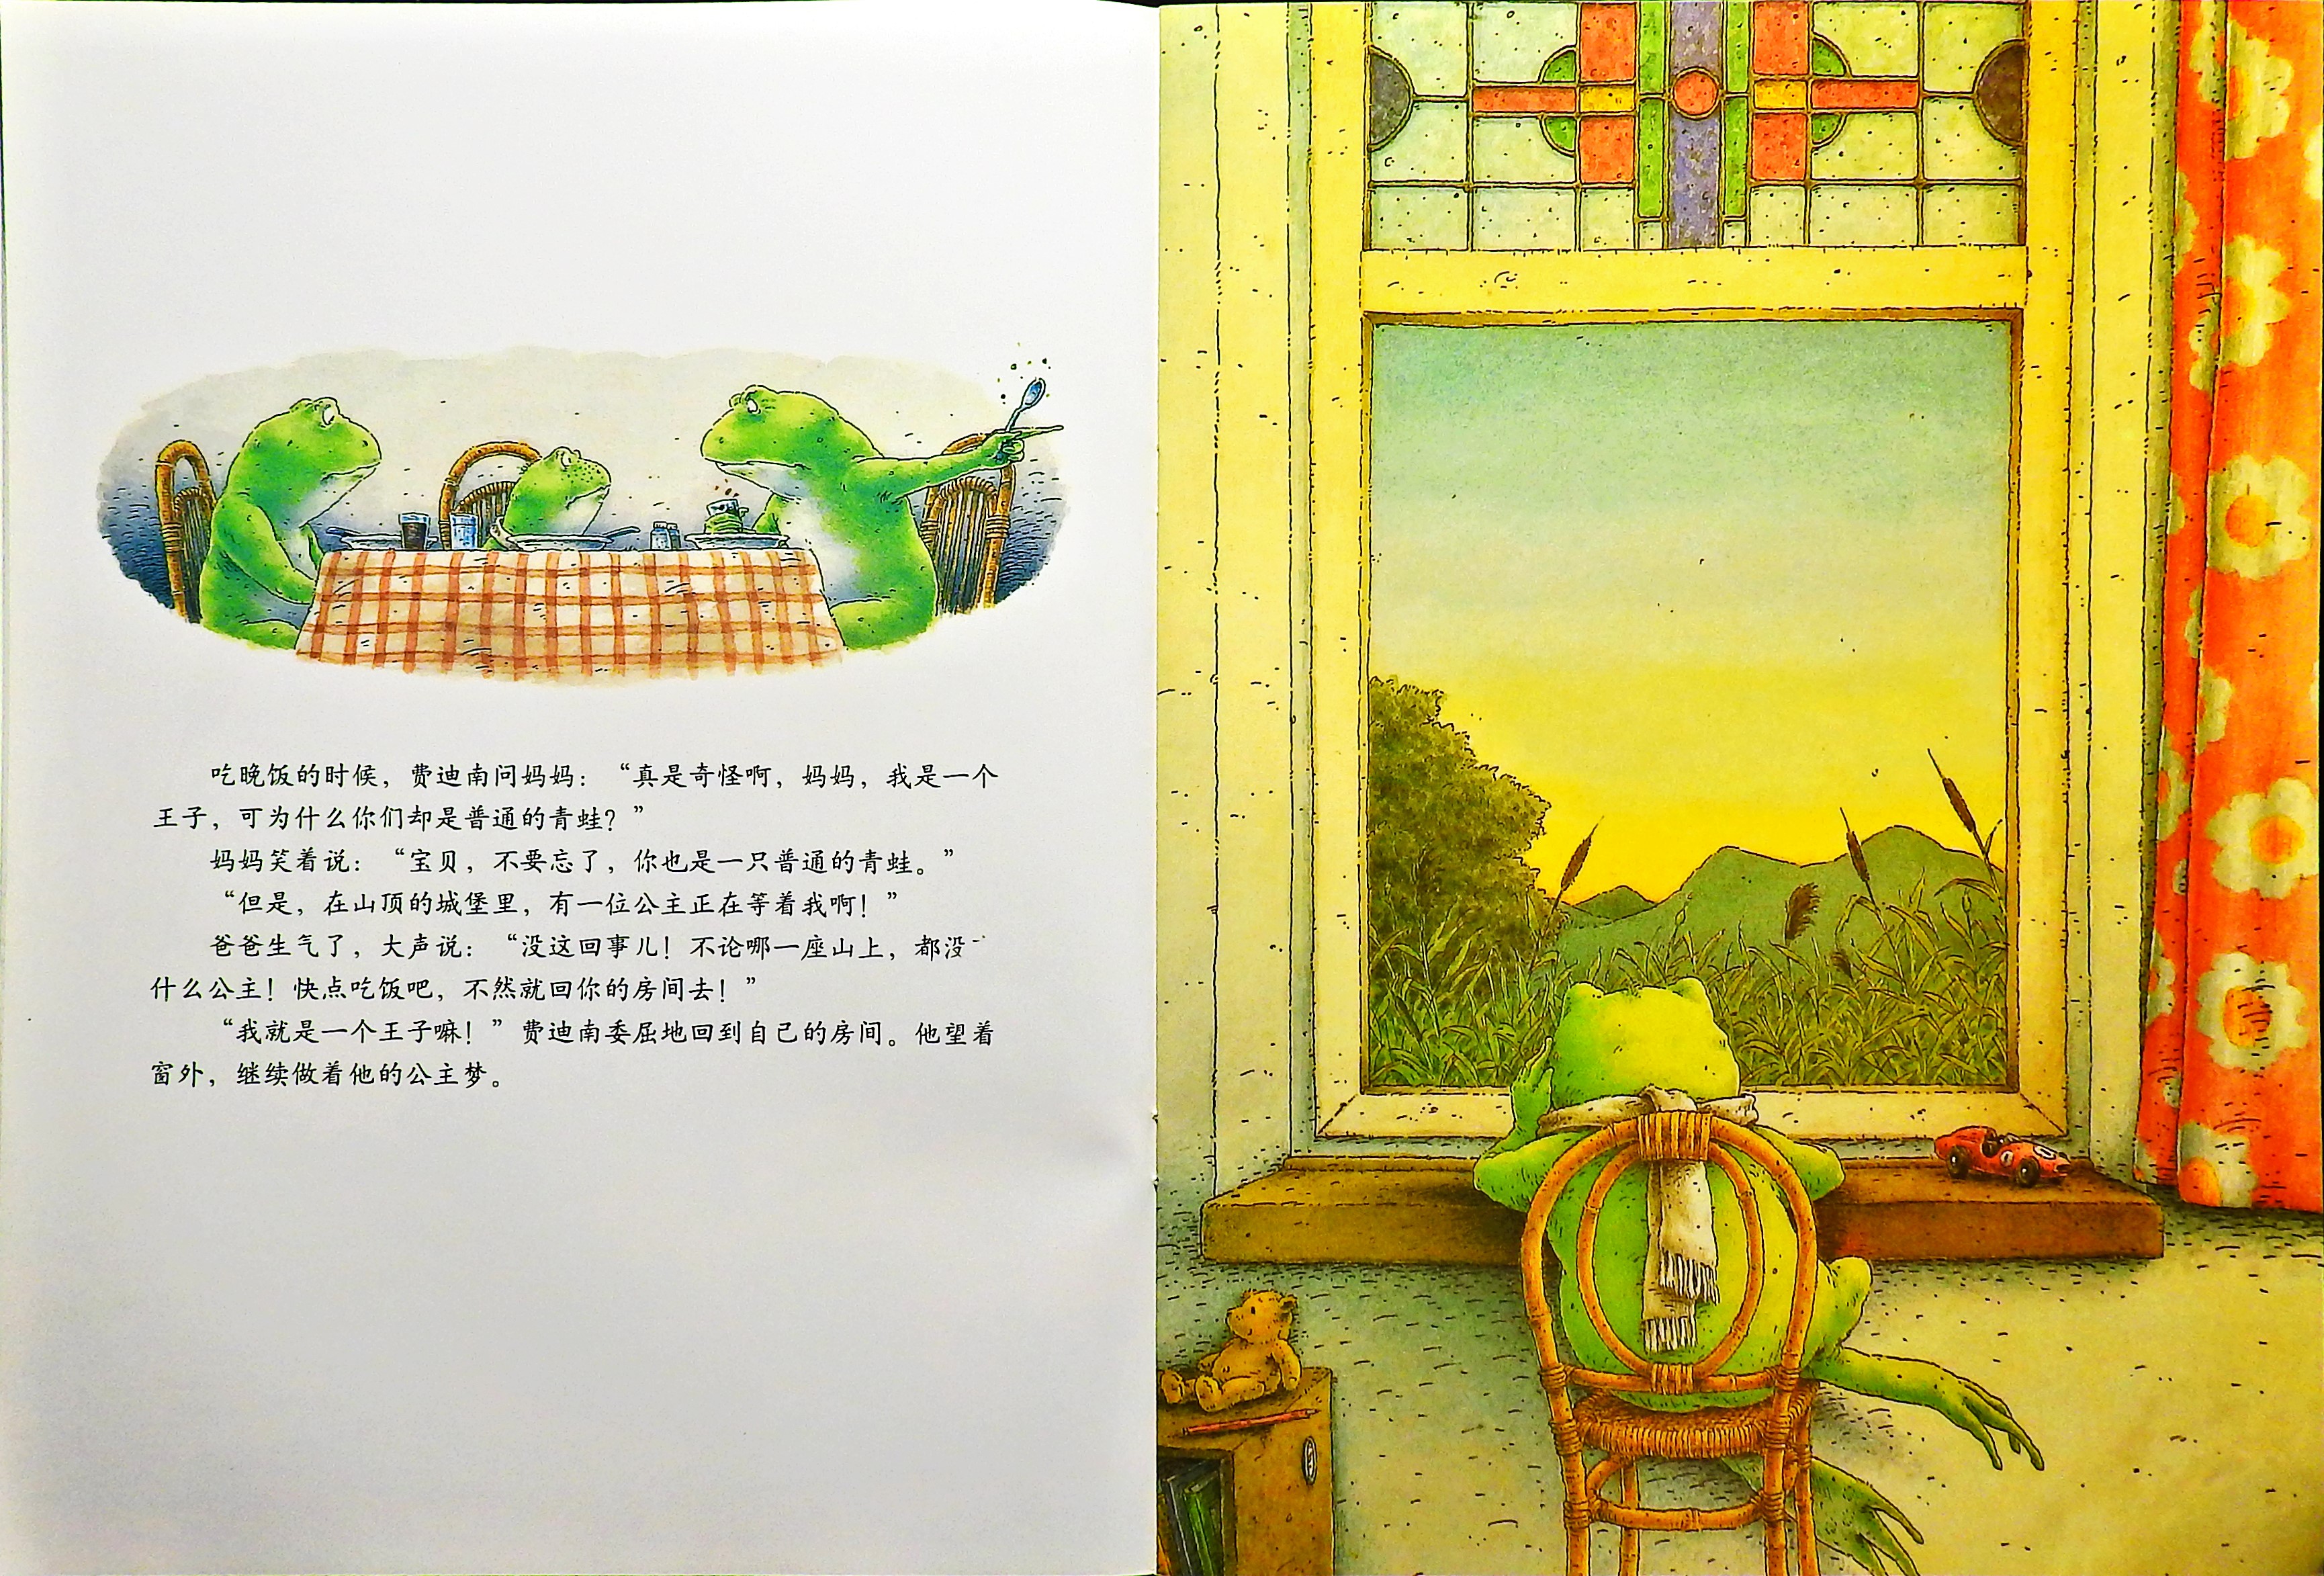 青蛙王子历险记 (05),绘本,绘本故事,绘本阅读,故事书,童书,图画书,课外阅读